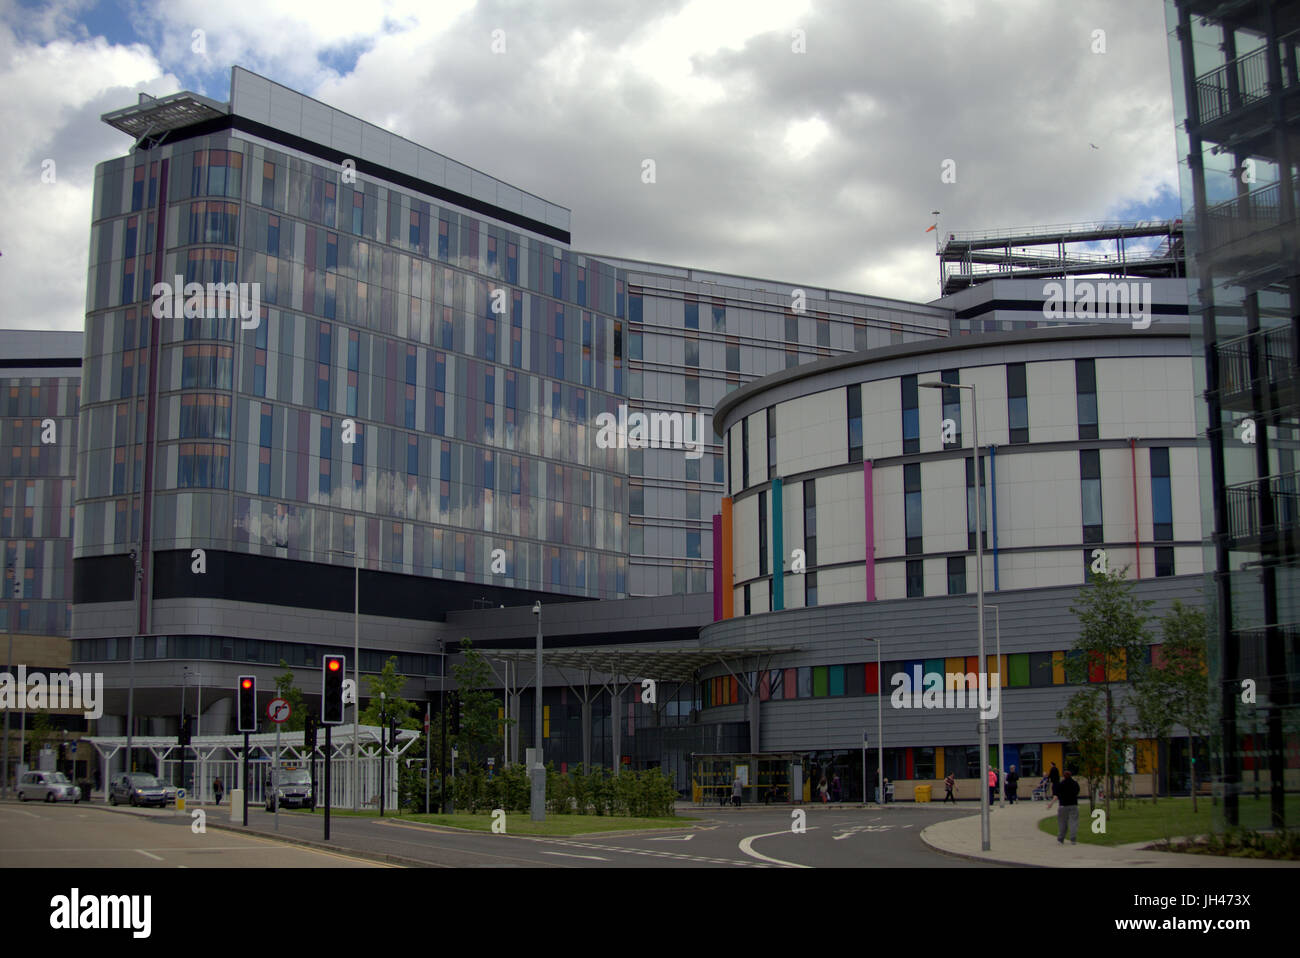 Queen Elizabeth University Hospital, Glasgow fleißiges Lieschen oder Tod Stern hat die unsichere Verkleidung von Grenfell tower fire Drama Disaster Stockfoto